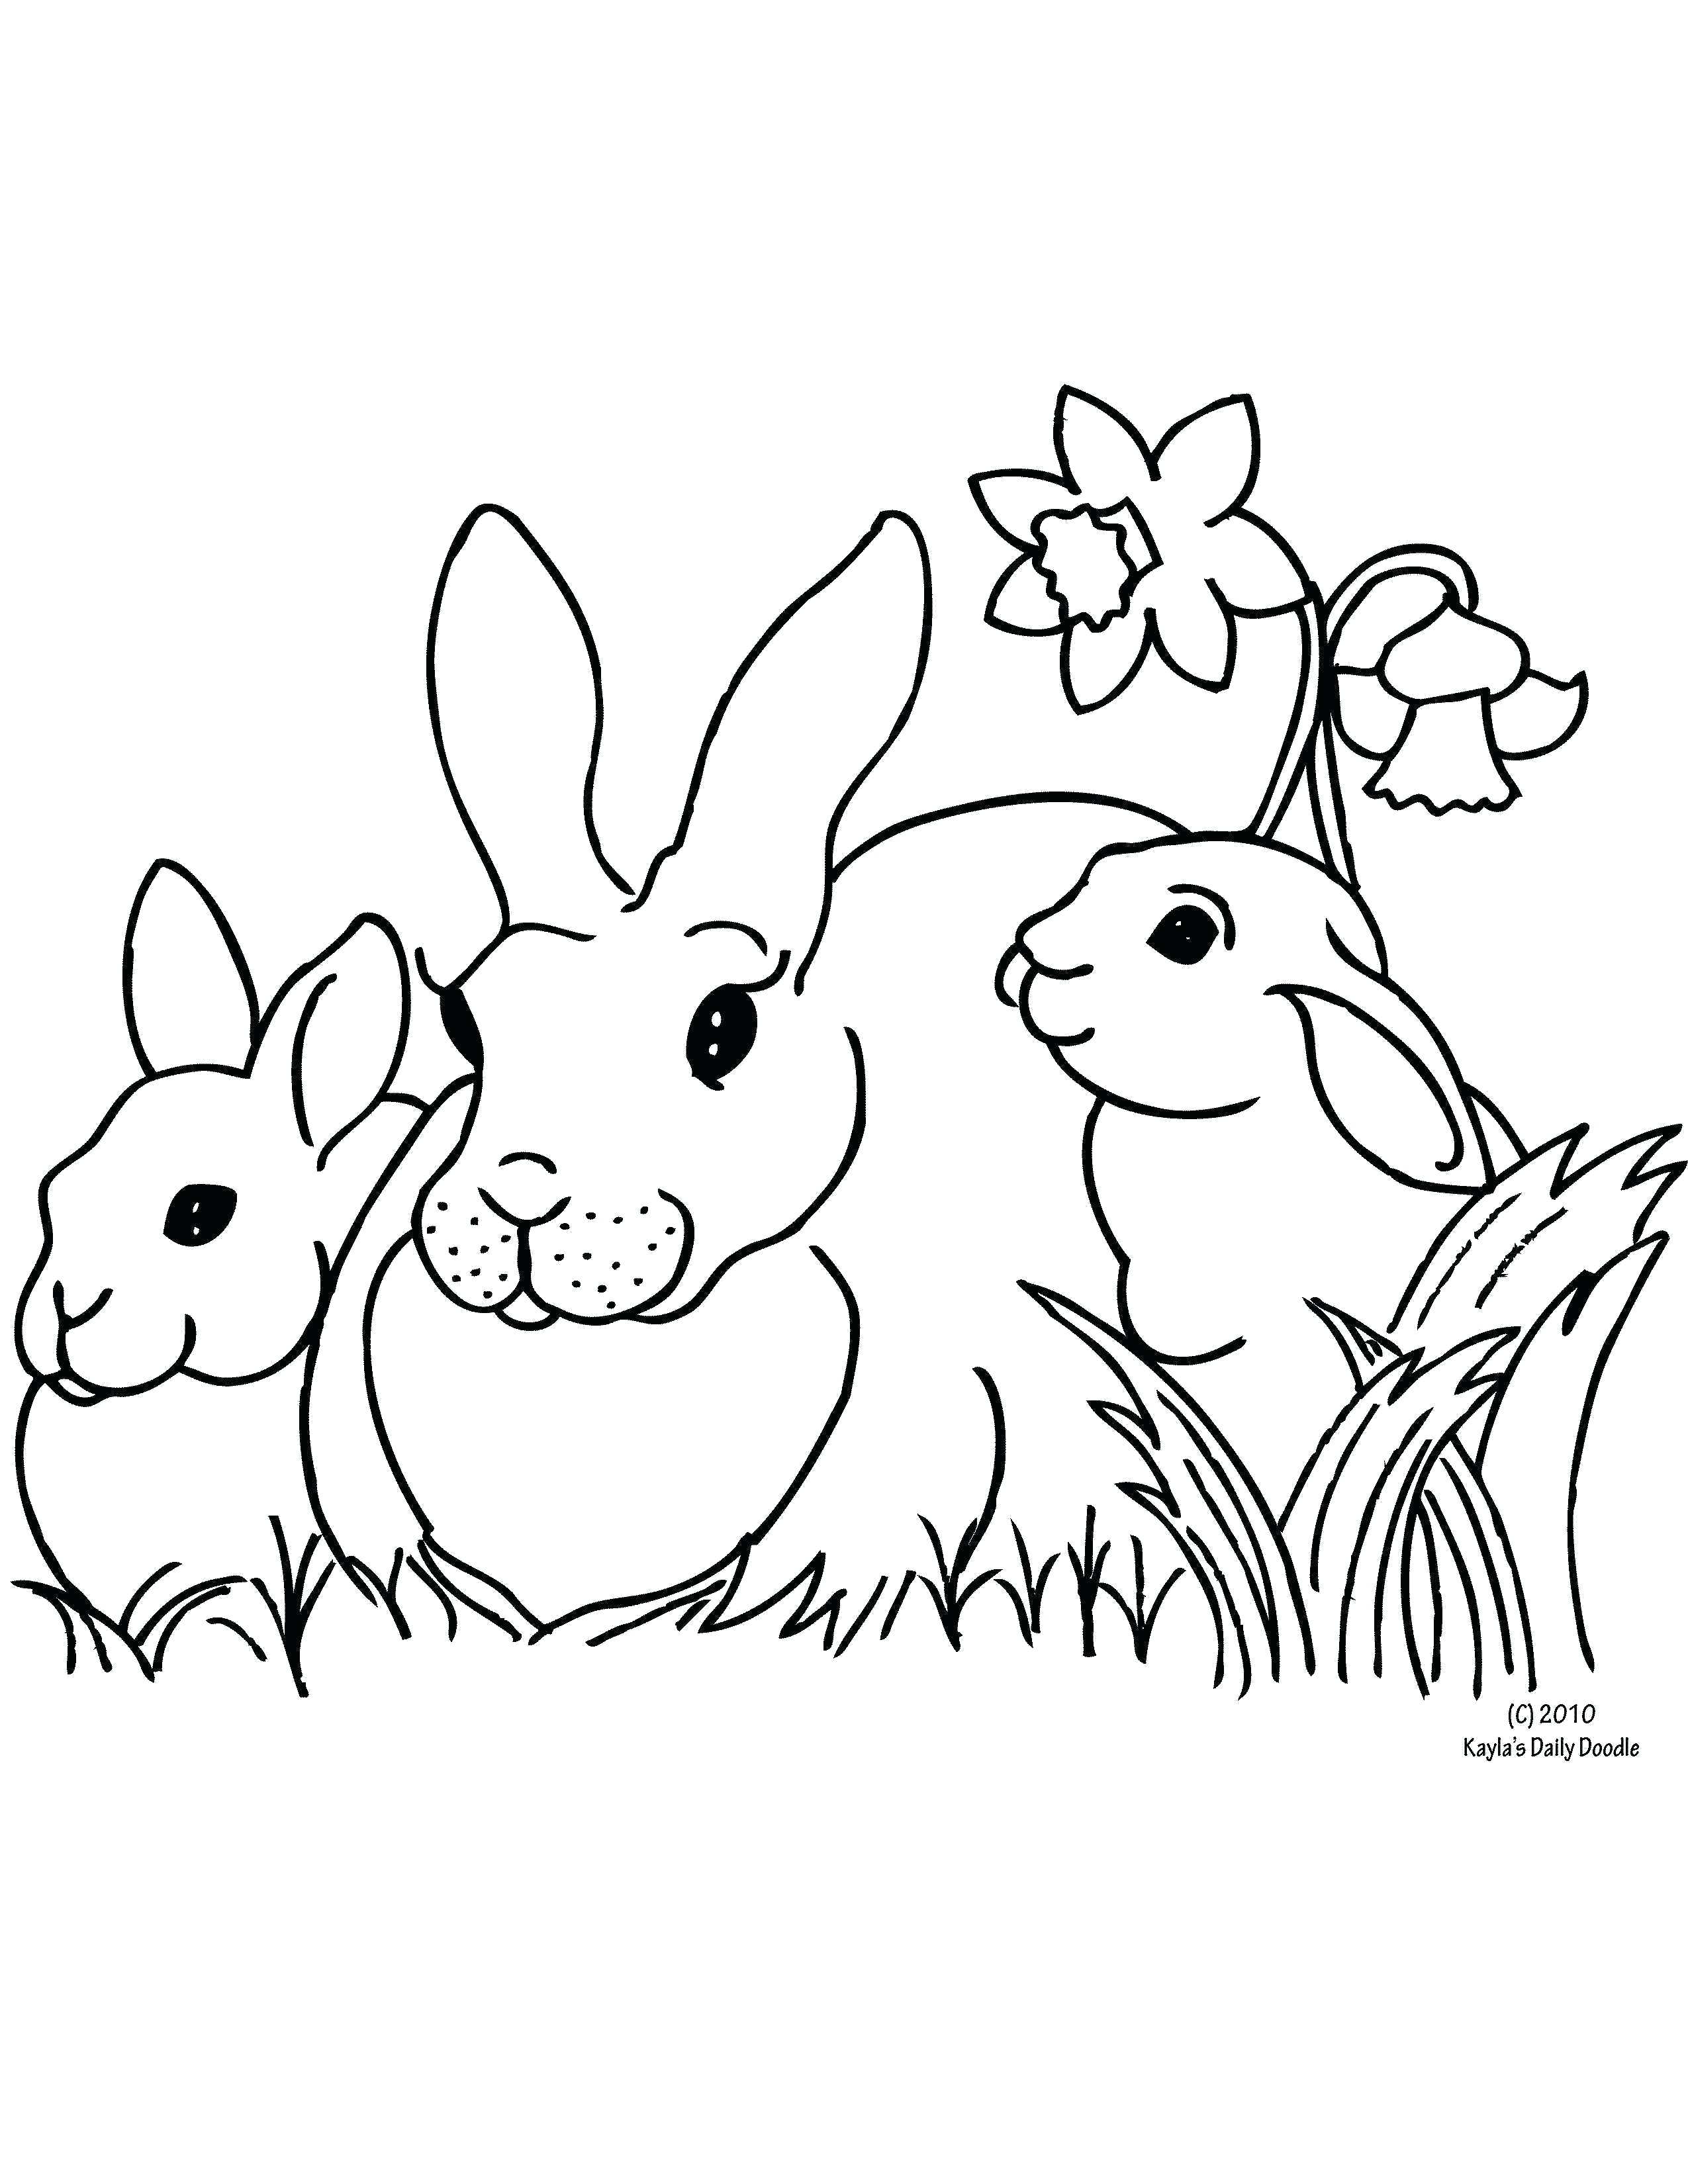 Tranh tô màu ngôi nhà của 3 chú thỏ đứng bên cành hoa